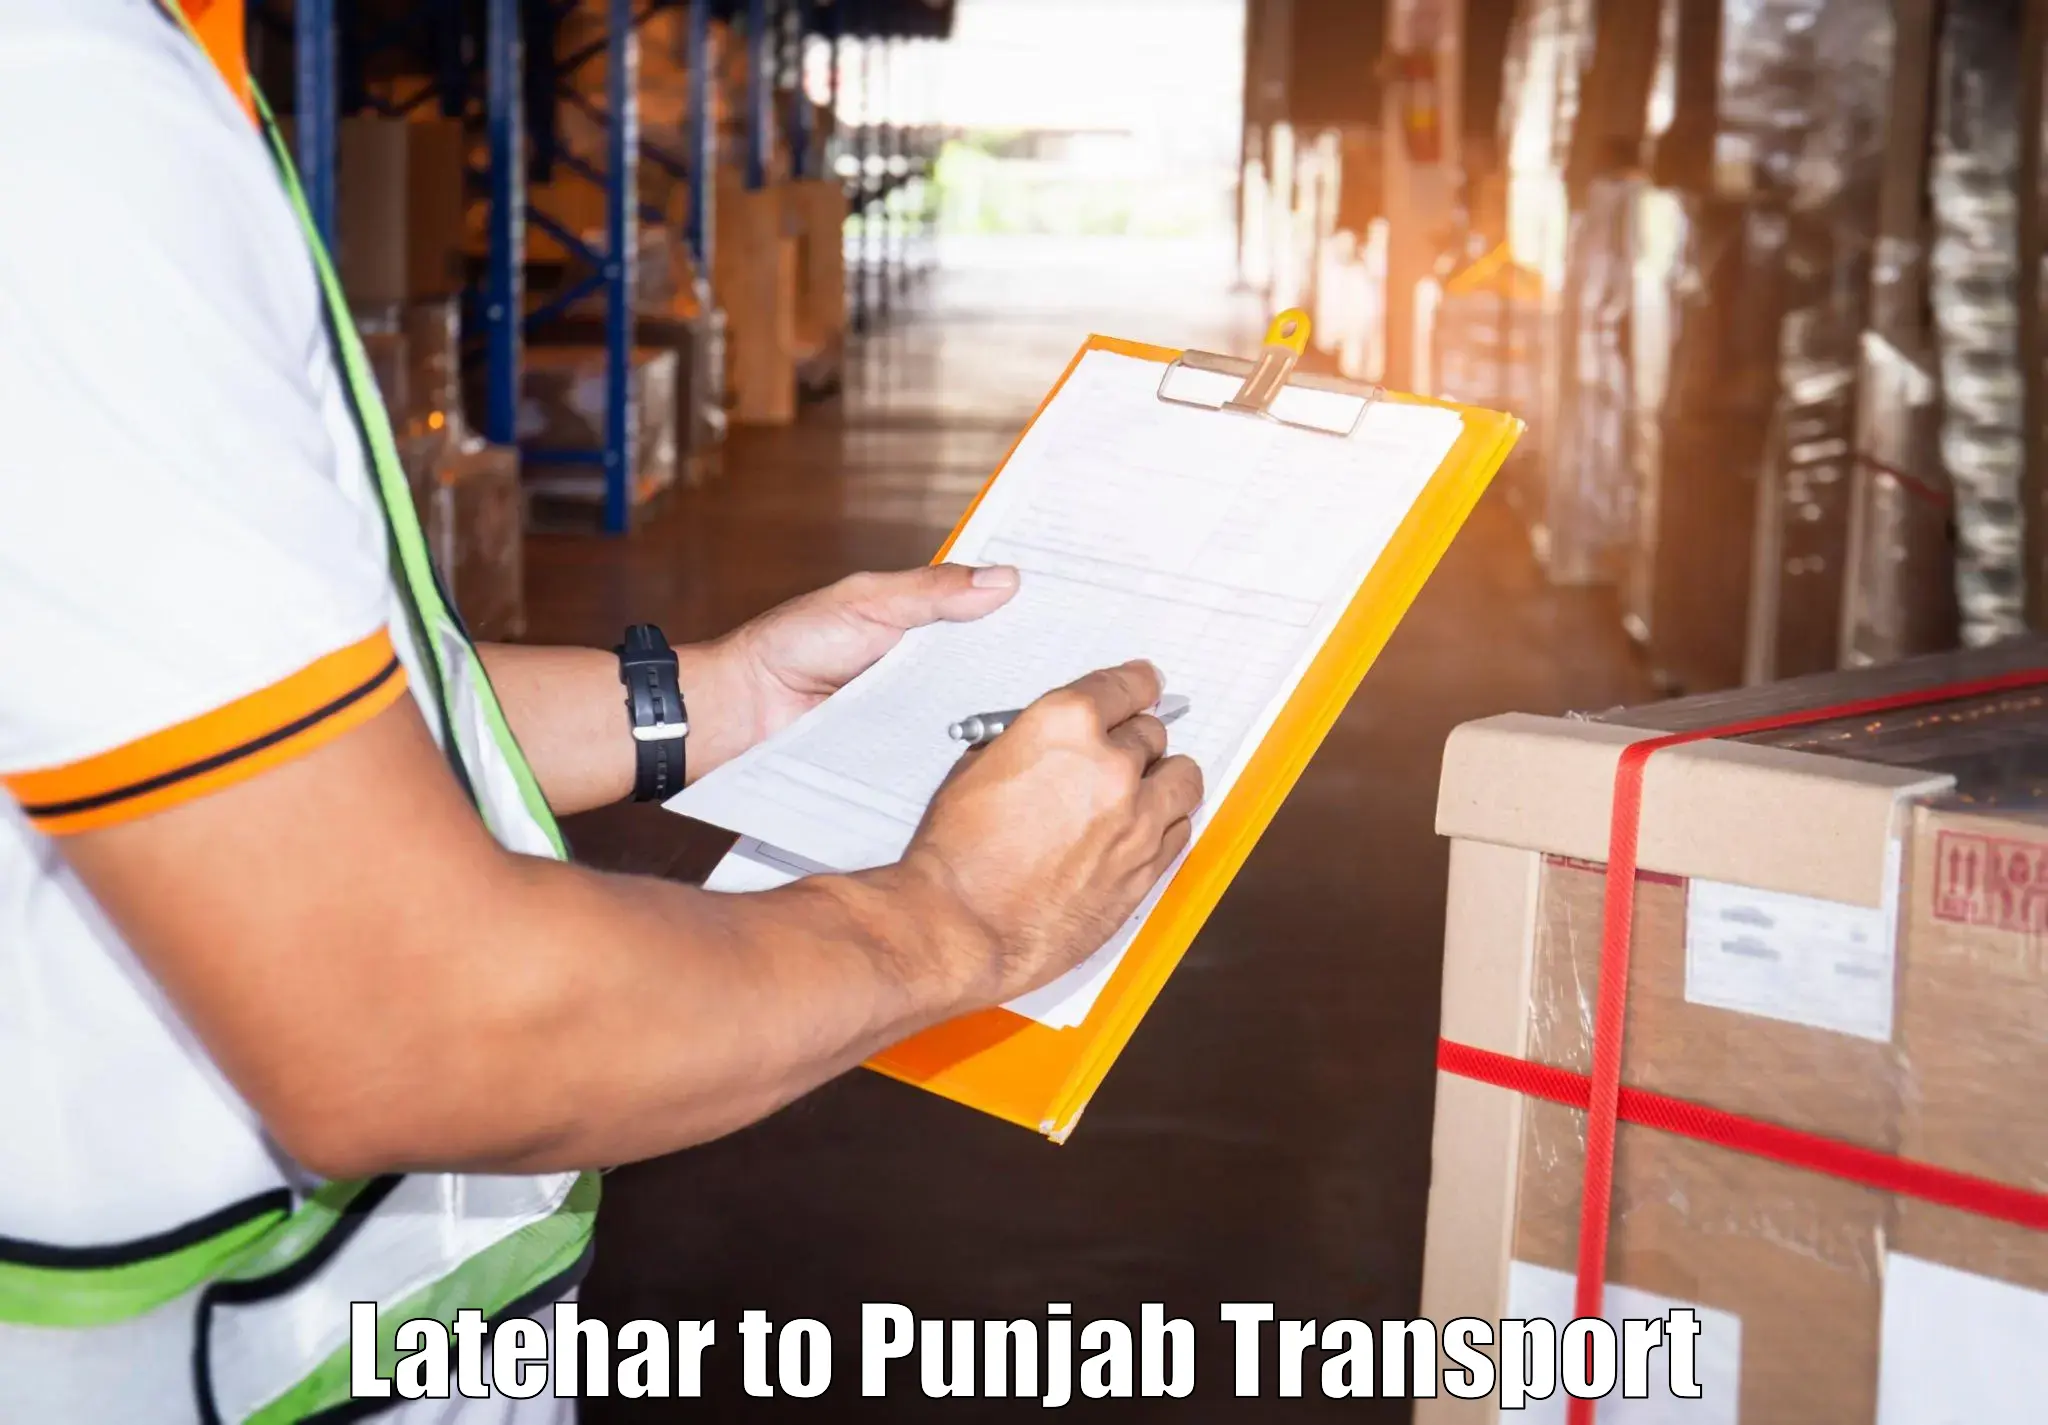 Transport in sharing in Latehar to Malerkotla